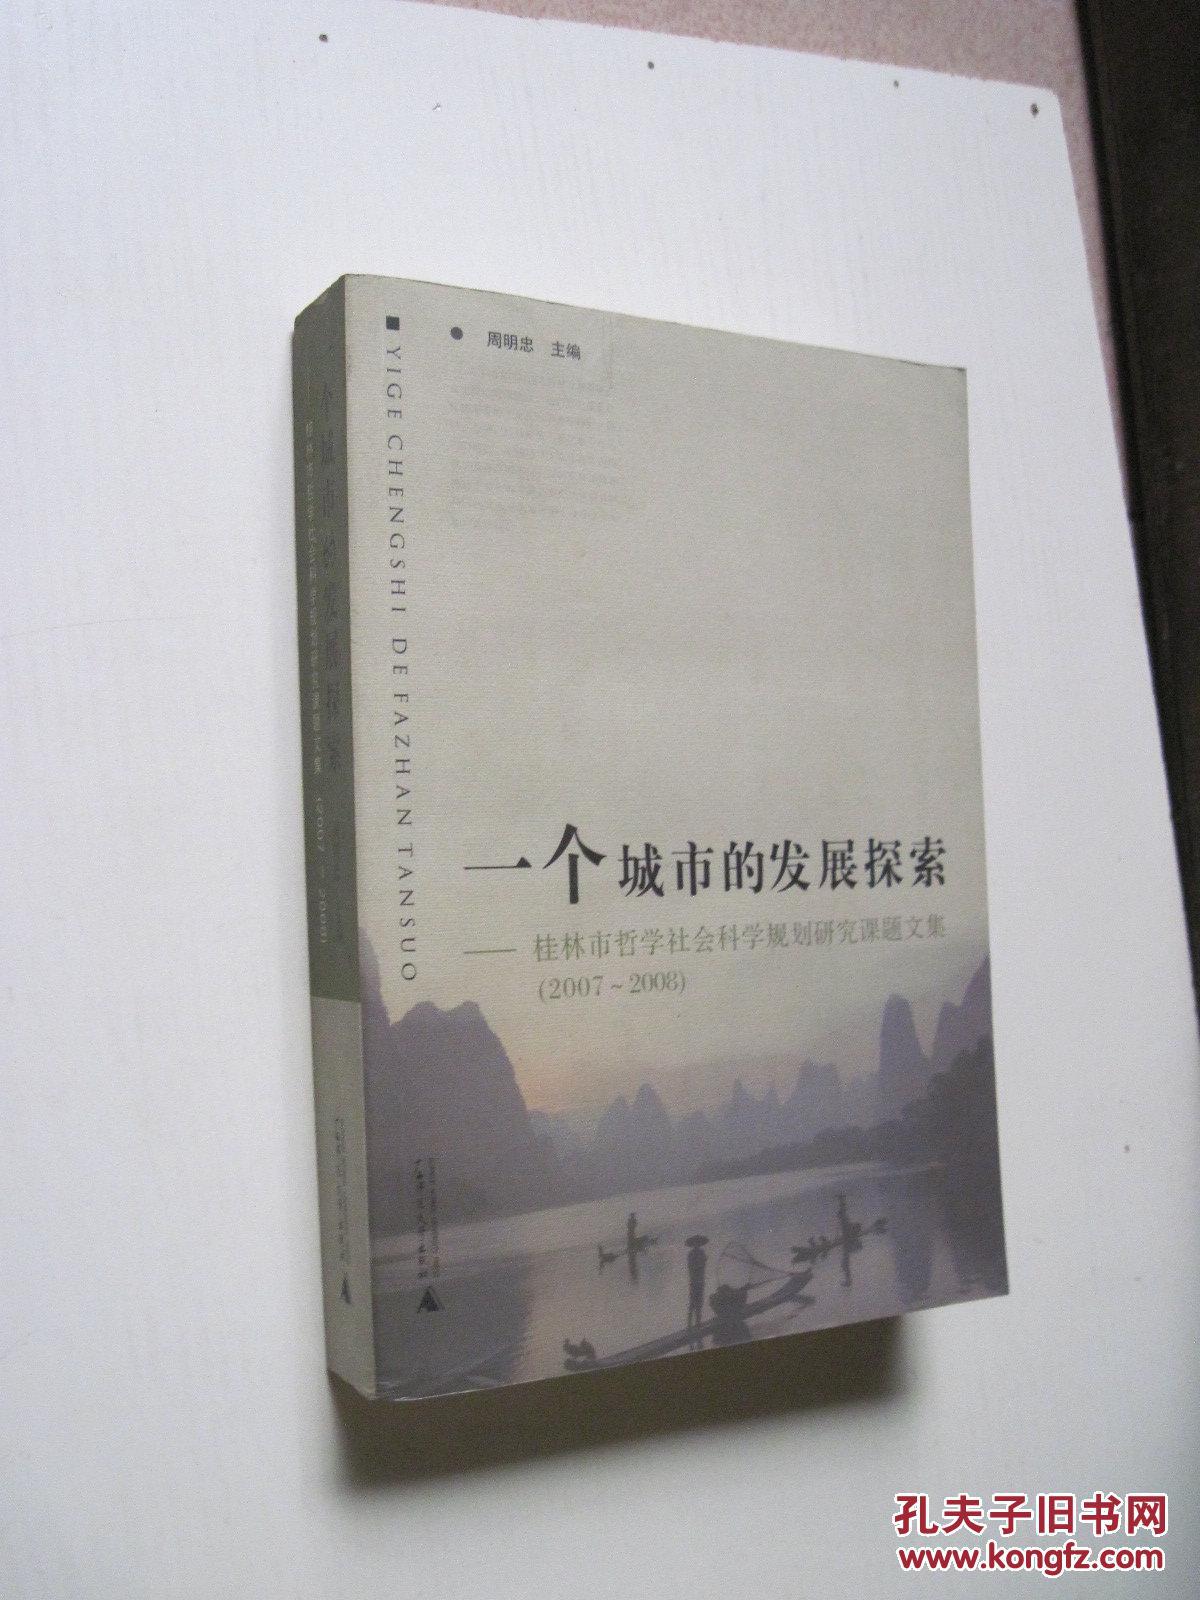 一个城市的发展探索 --- 桂林市哲学社会科学规划研究重点课题文集【2007-2008】